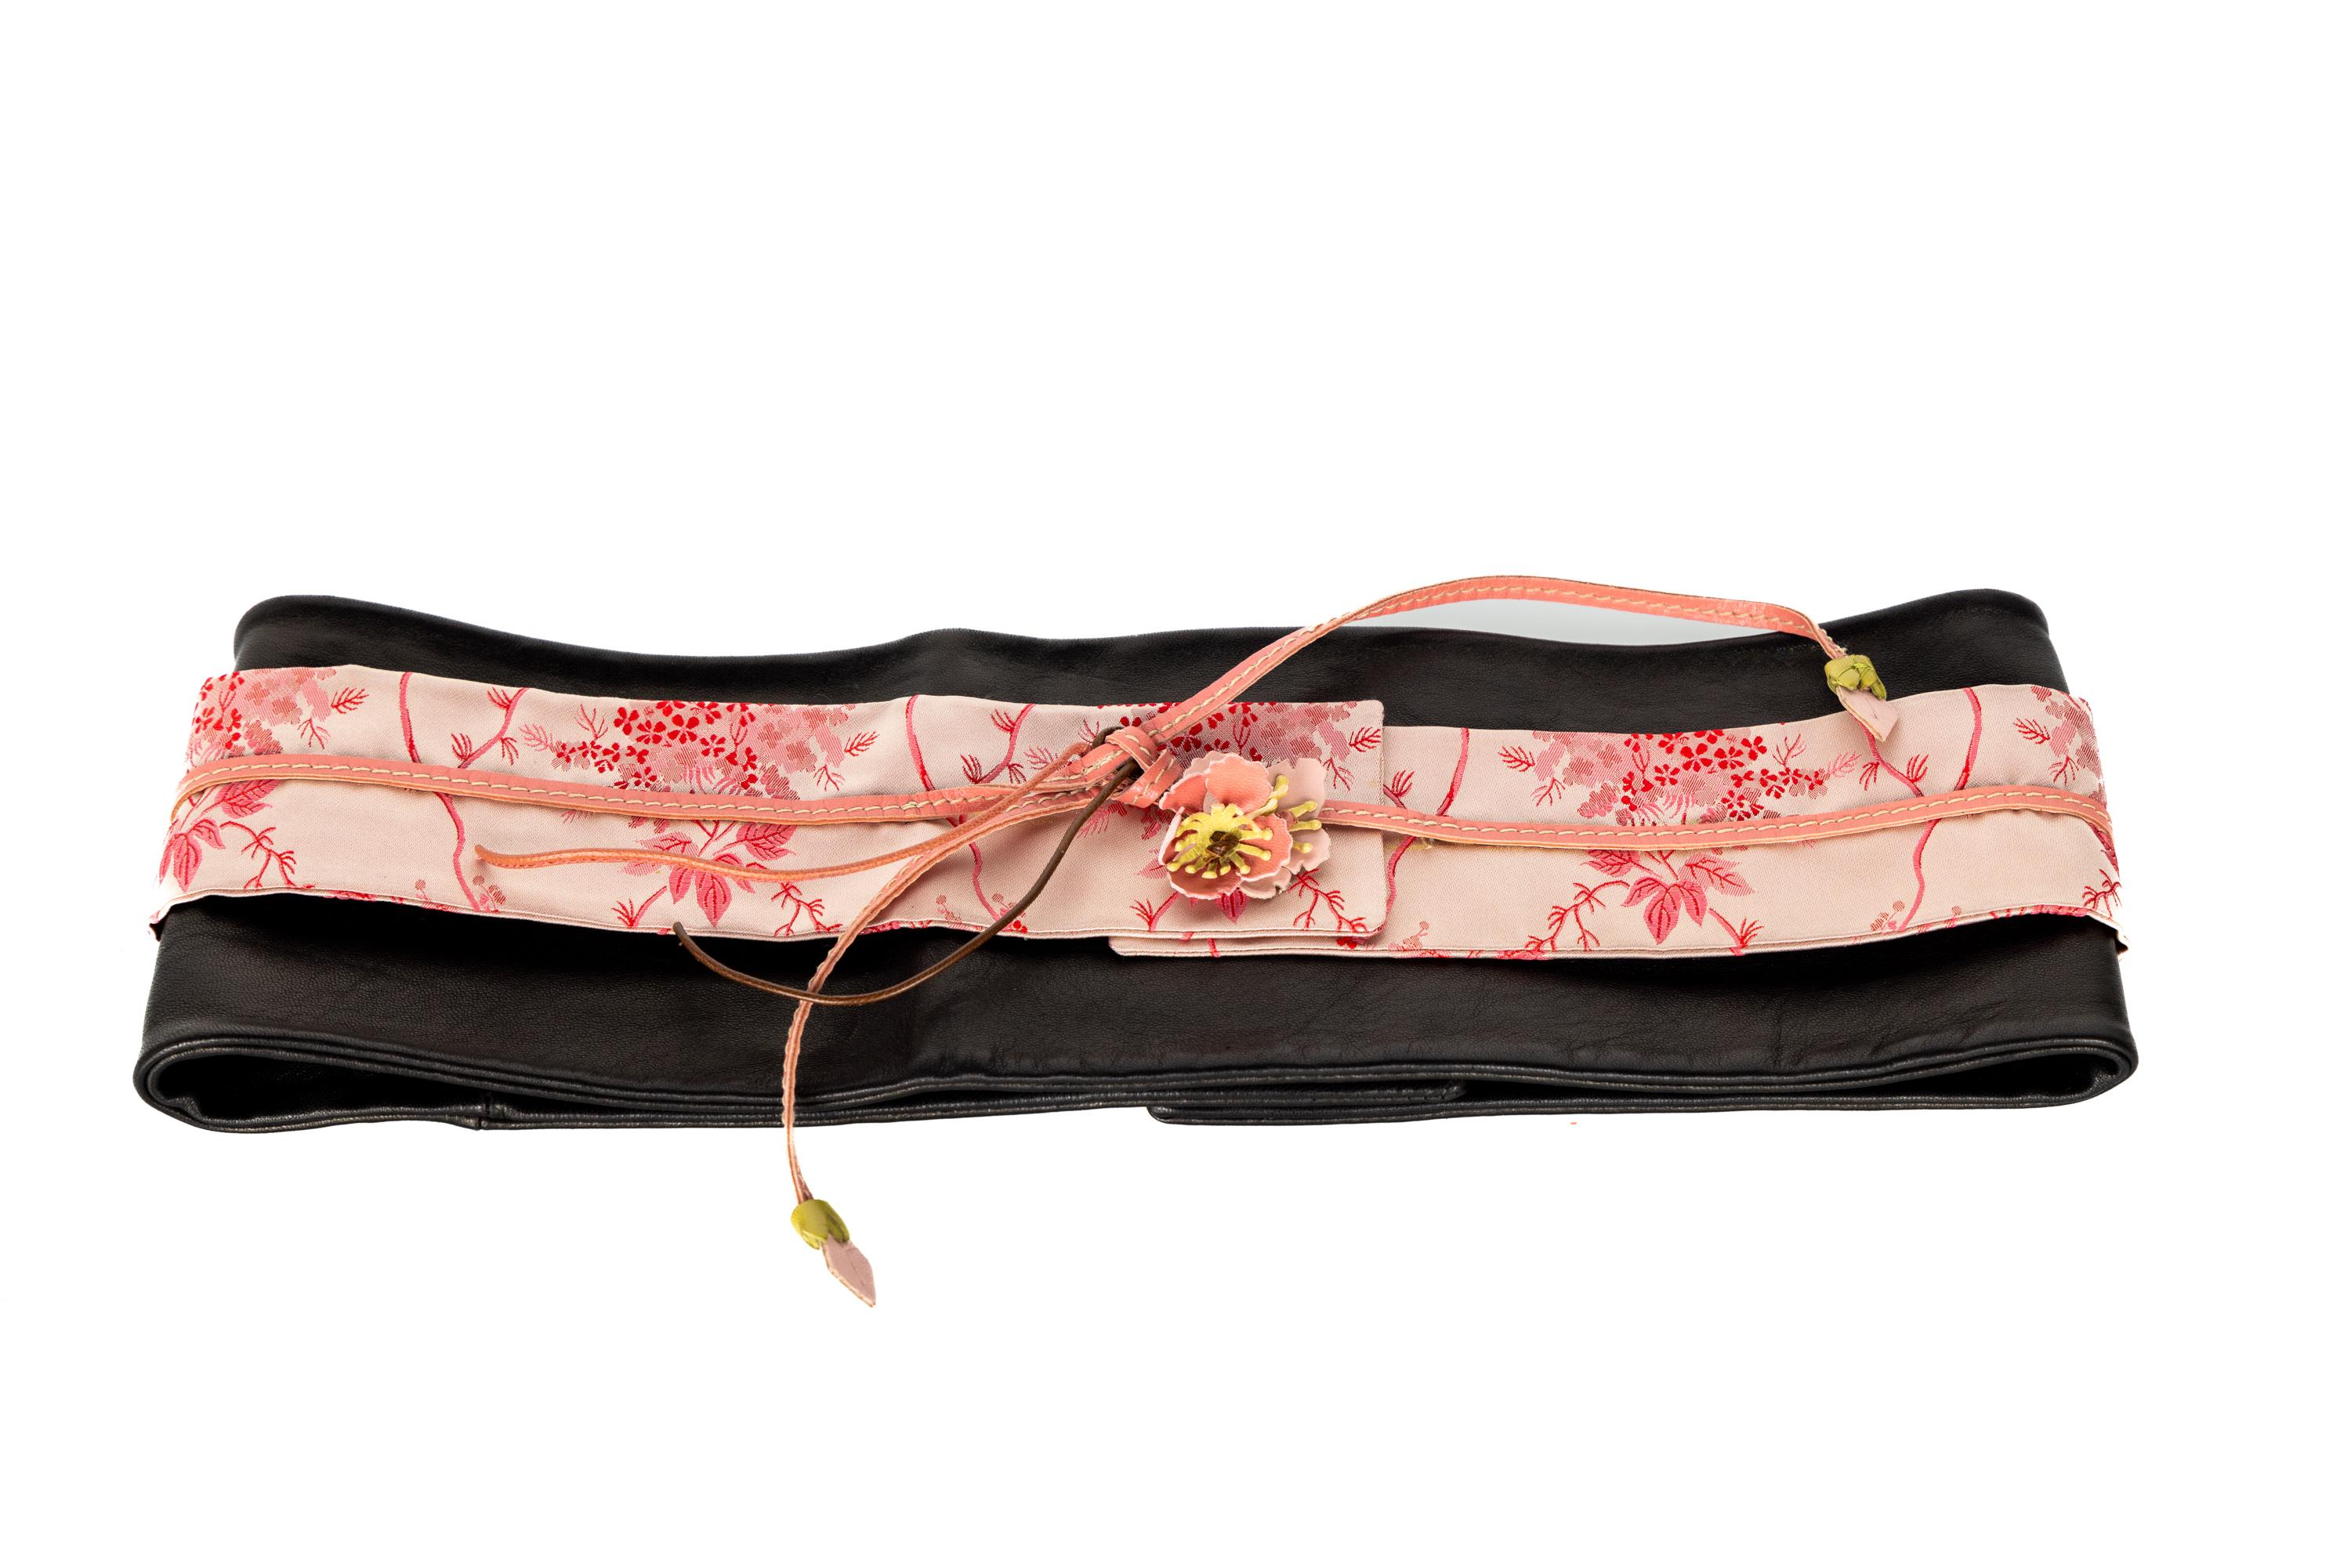 Prada Cherry Blossom Leather Silk Obi Kimono Belt 1990s In Excellent Condition For Sale In Boca Raton, FL